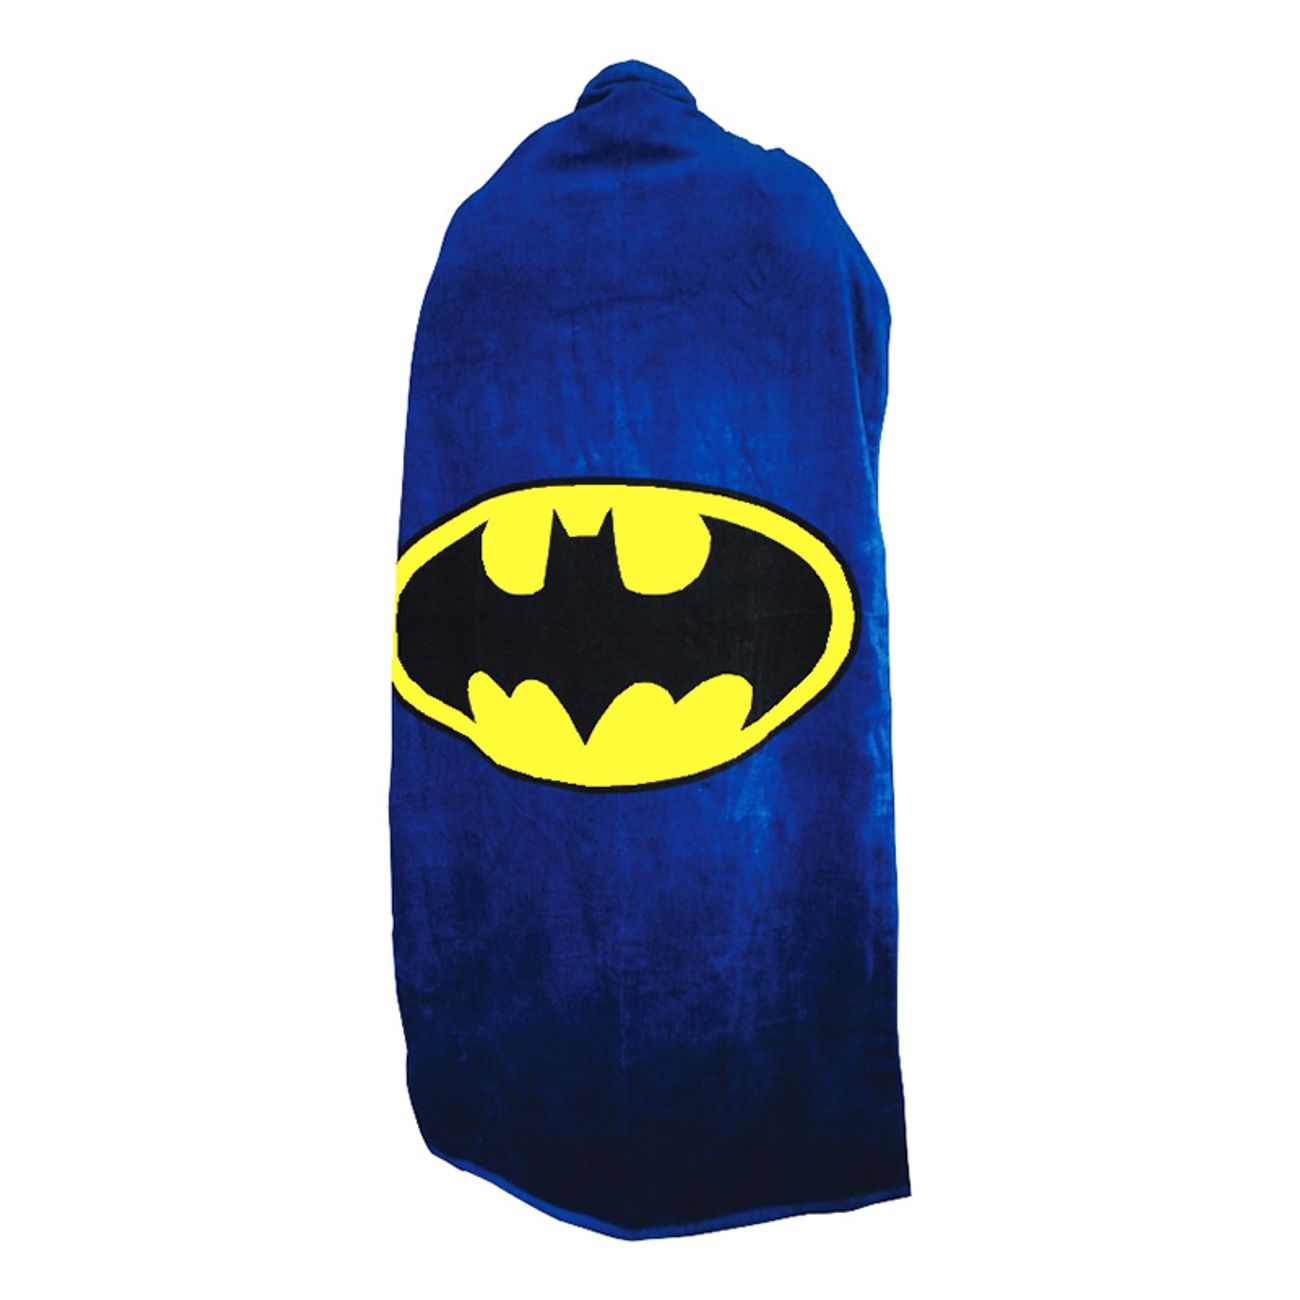 batman-cape-handduk-2